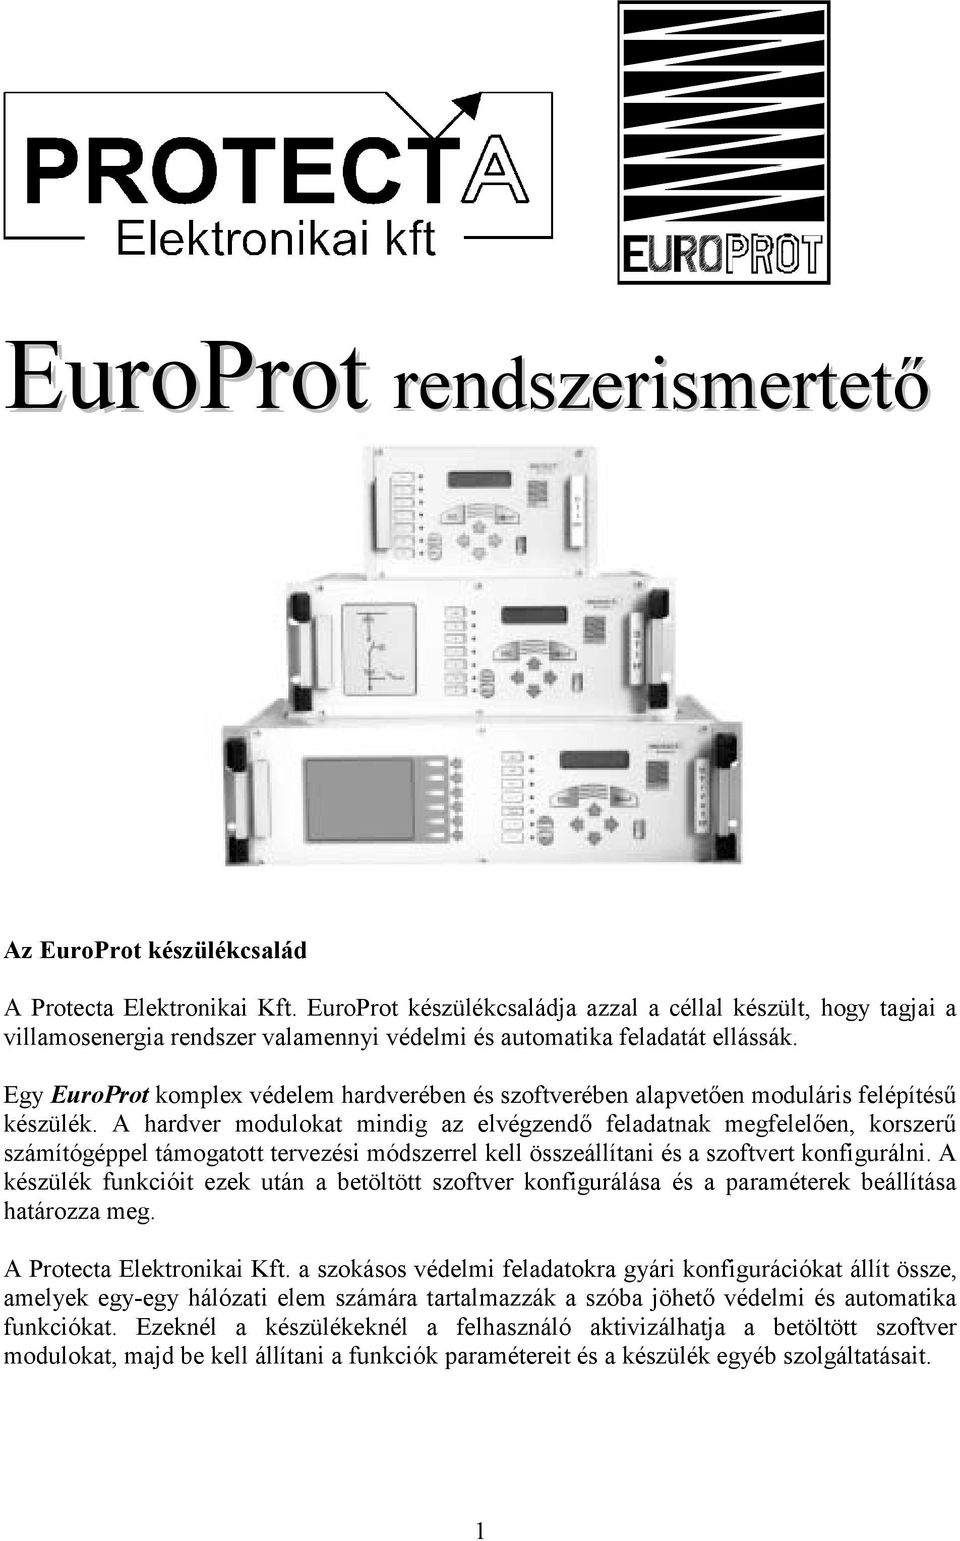 Egy EuroProt komplex védelem hardverében és szoftverében alapvetően moduláris felépítésű készülék.